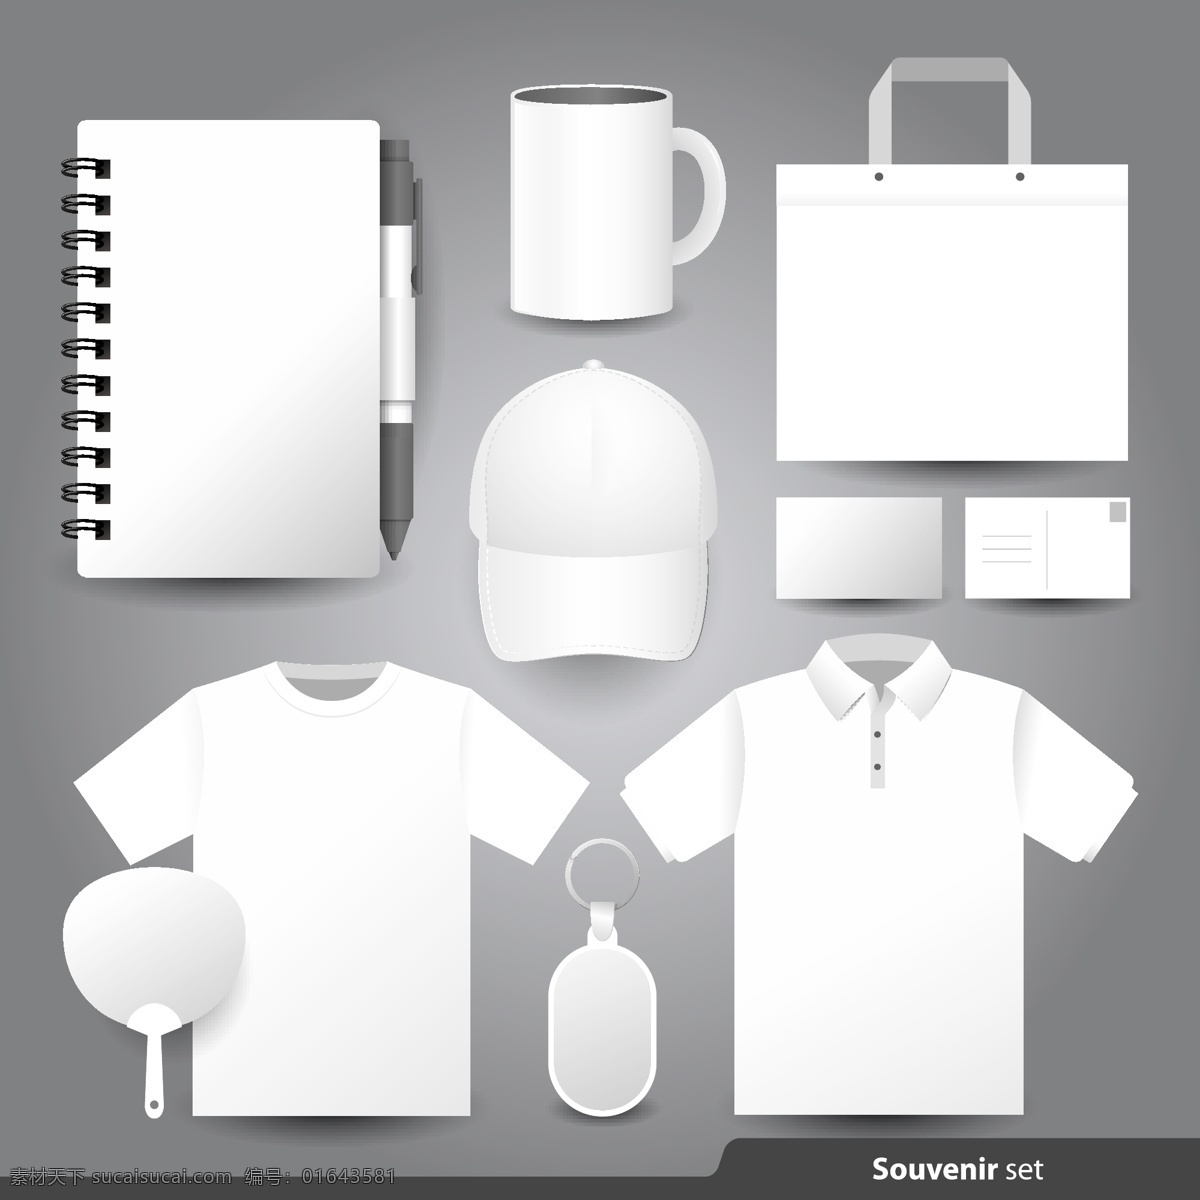 品牌设计 vi 应用 合集 矢量 品牌 包装 矢量素材 设计素材 背景素材